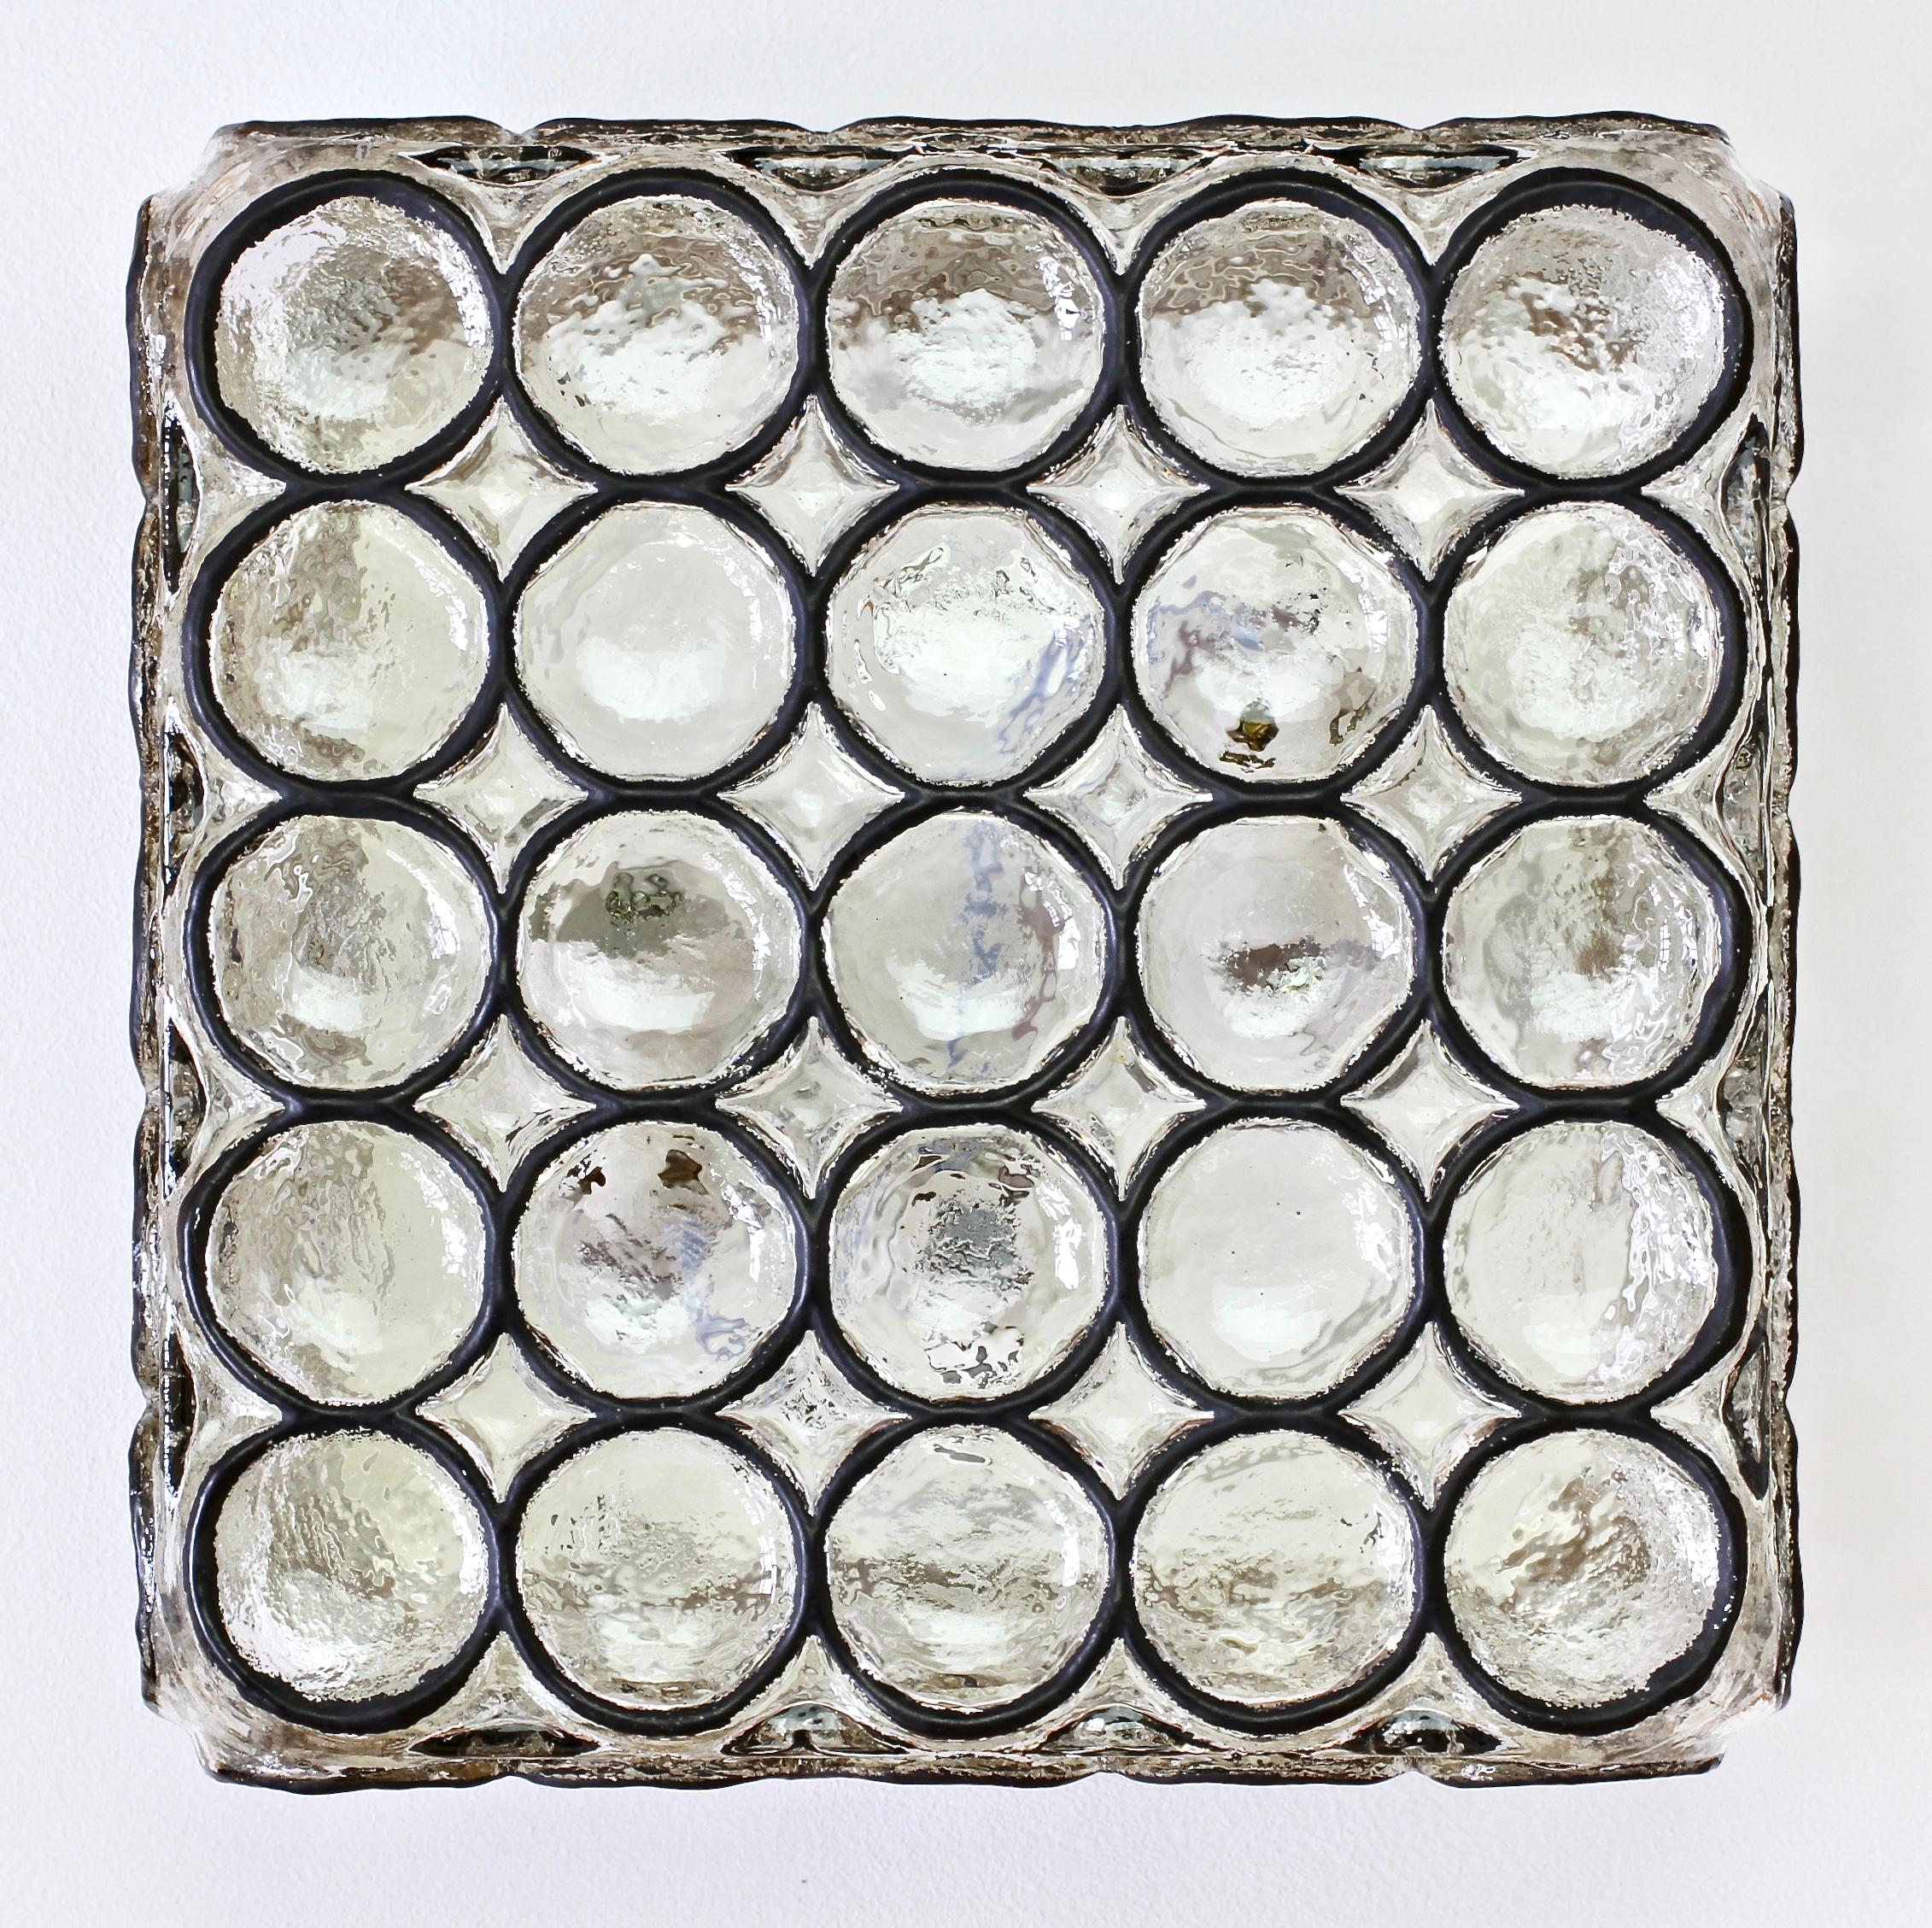 Seltene Gelegenheit, ein Paar von insgesamt 6 Paaren großer quadratischer Mid-Century-Eisenringe und Glasleuchten von Glashütte Limburg, Deutschland, ca. 1965, zu erwerben. Sie besteht aus dickem, mundgeblasenem Glas mit gewölbten, runden